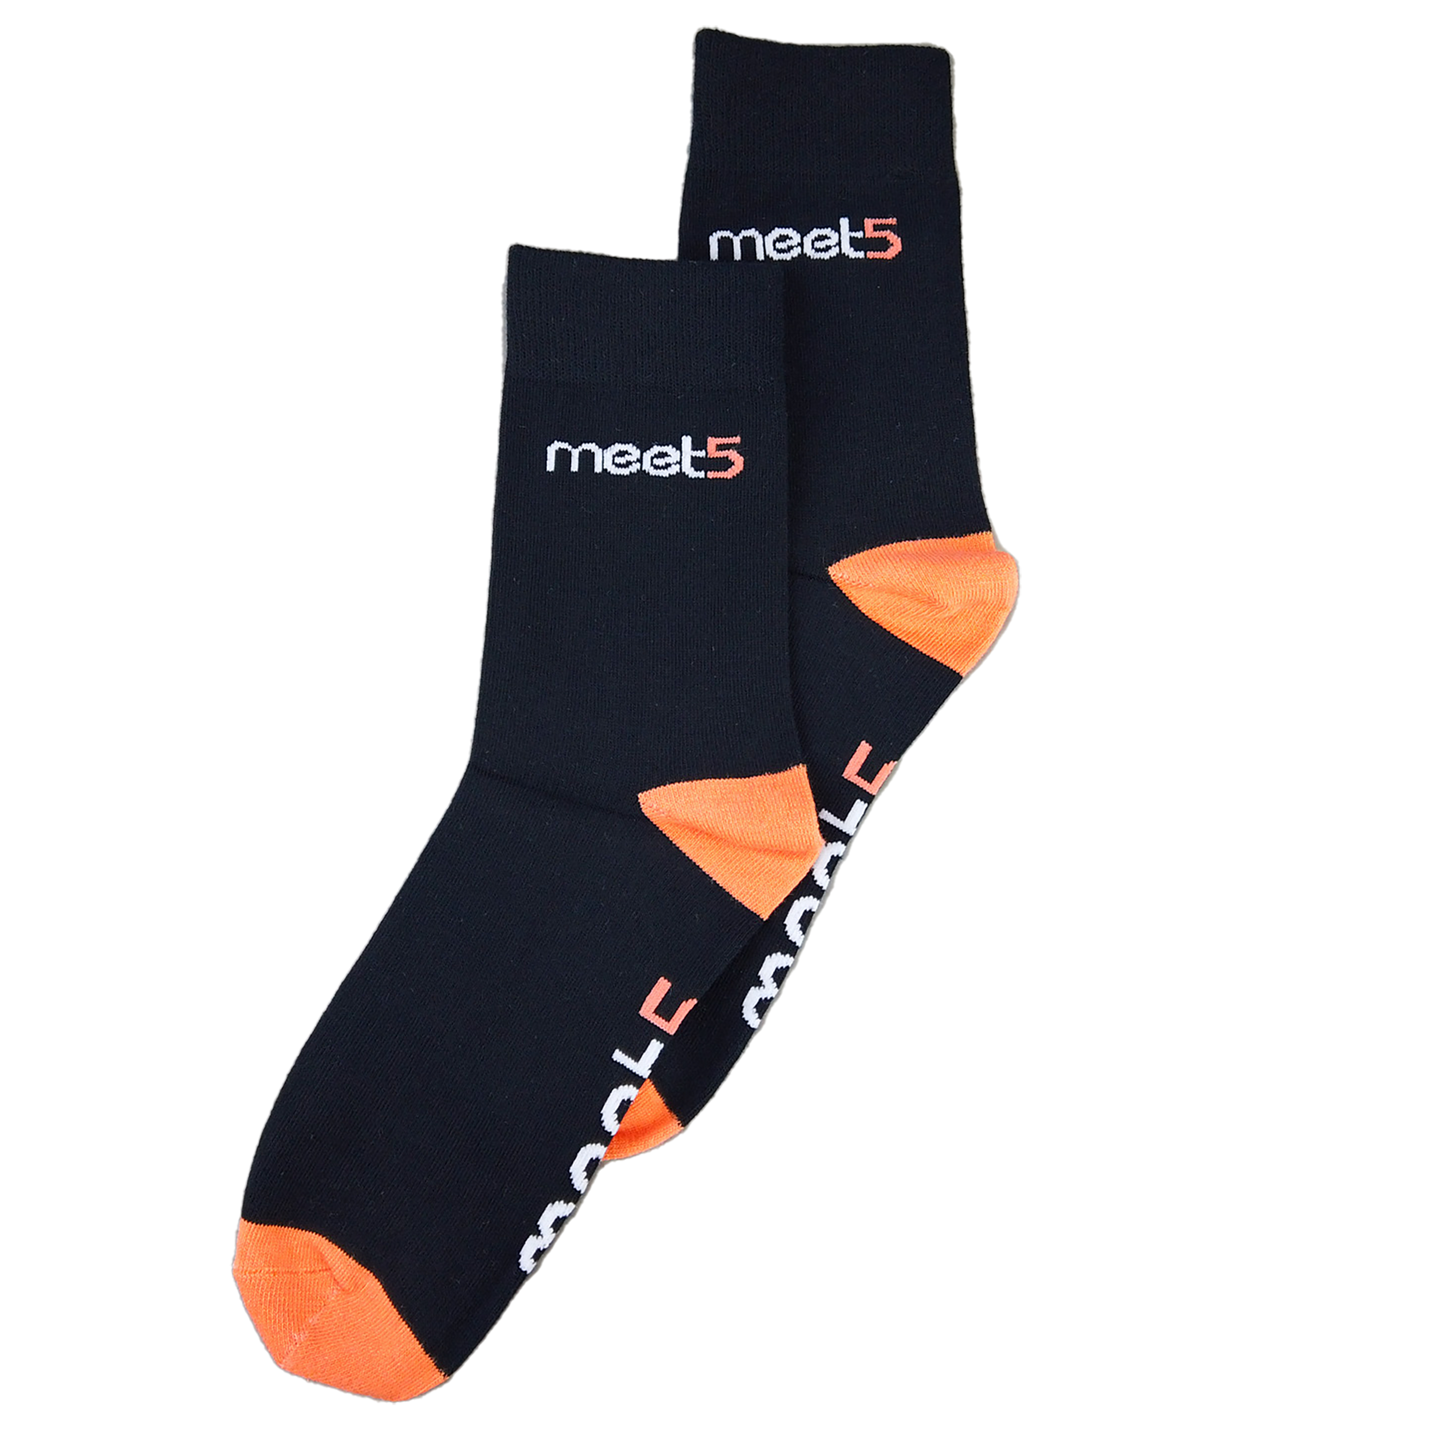 Schwarze Socken mit orangenen Spitze und Ferse. Auf der Sohle ist das Meet5 Logo gestickt.